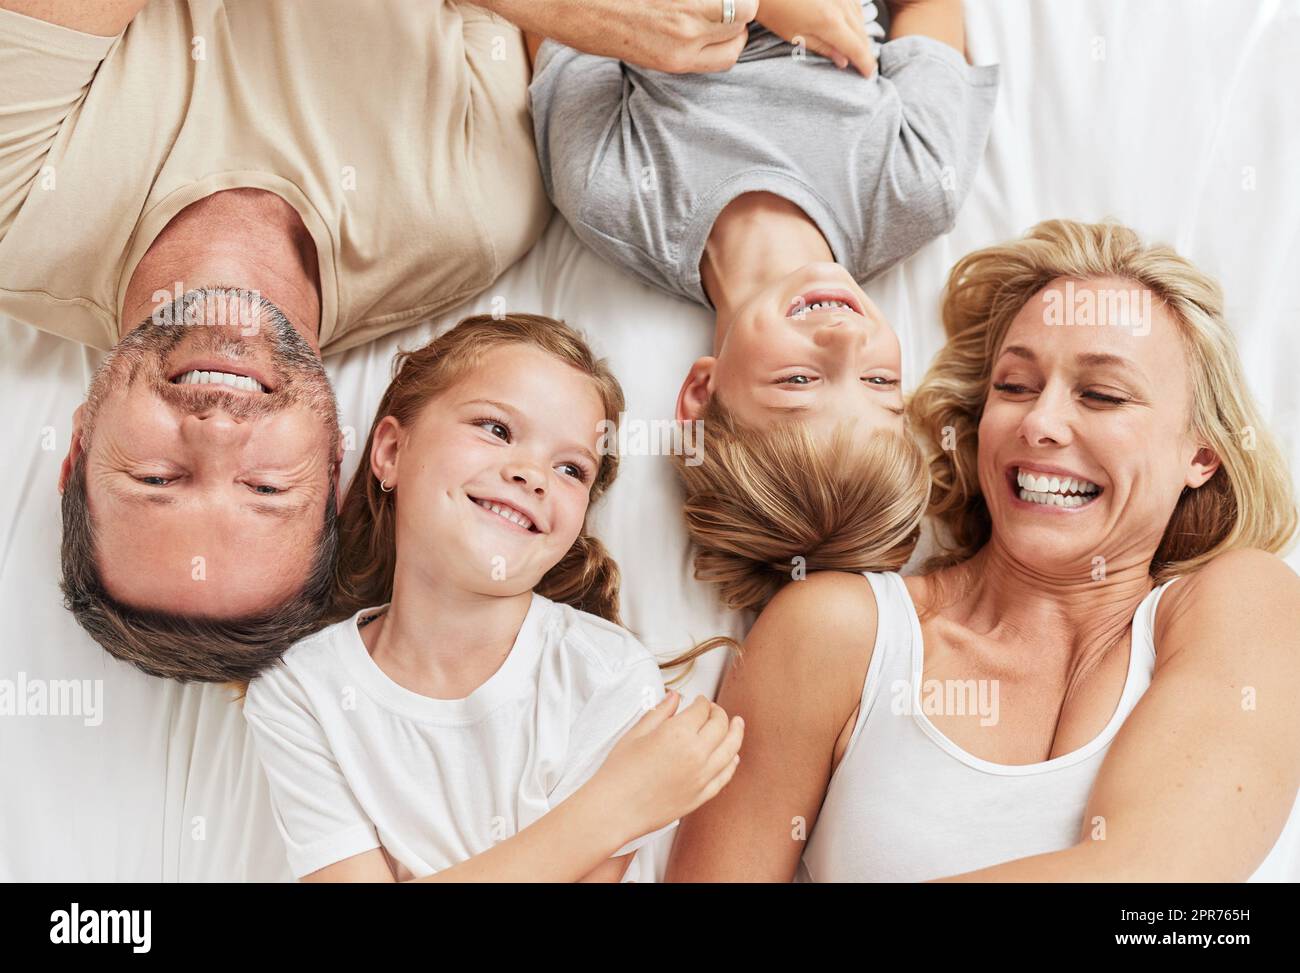 Das ist es, was wir getan haben. Aufnahme einer schönen jungen Familie, die sich im Bett zusammenklebte. Stockfoto